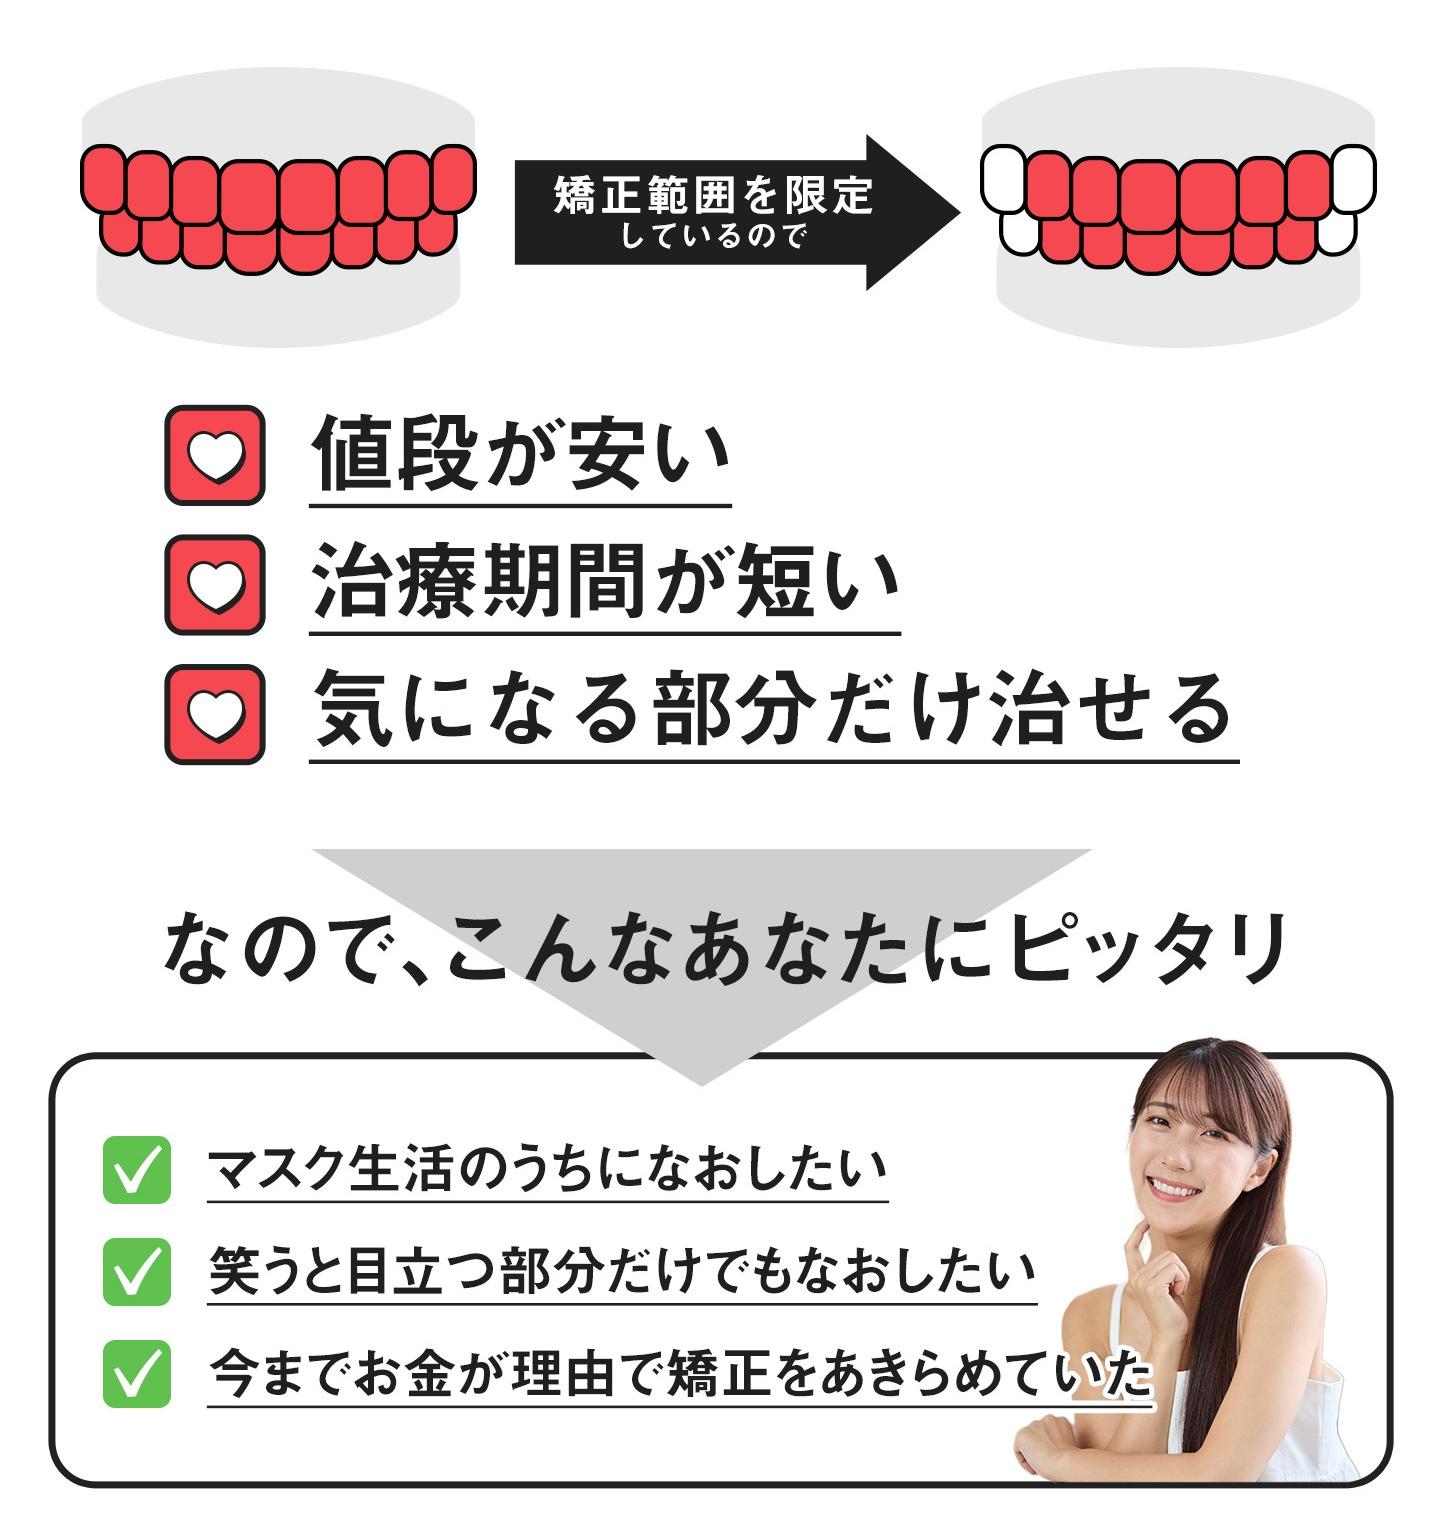 前歯だけのマウスピース矯正のメリット